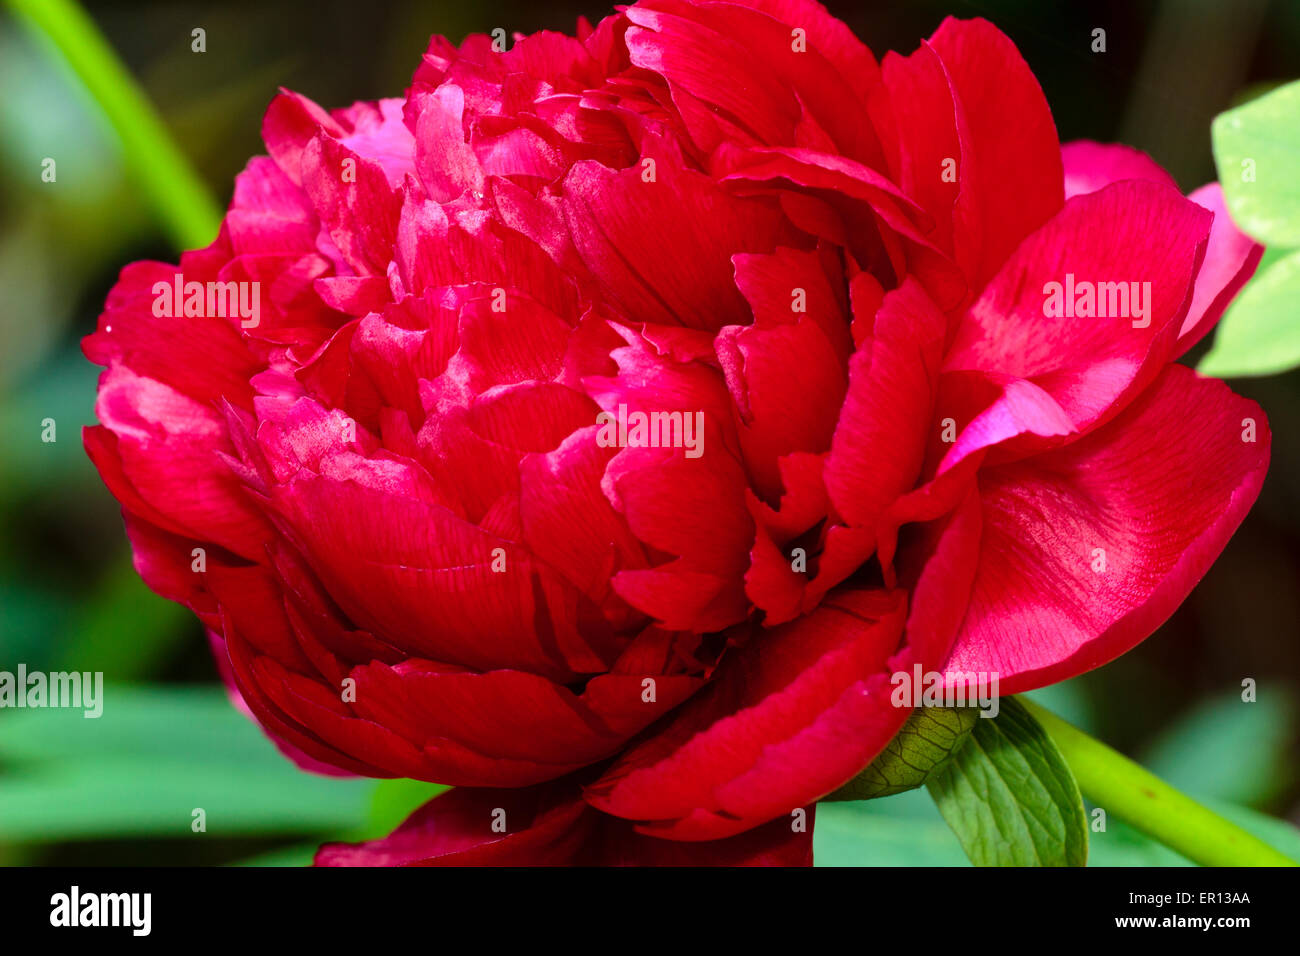 Vue rapprochée de la fleur rouge double du Chalet jardin pivoine, Paeonia officinalis 'Rubra' Plena Banque D'Images